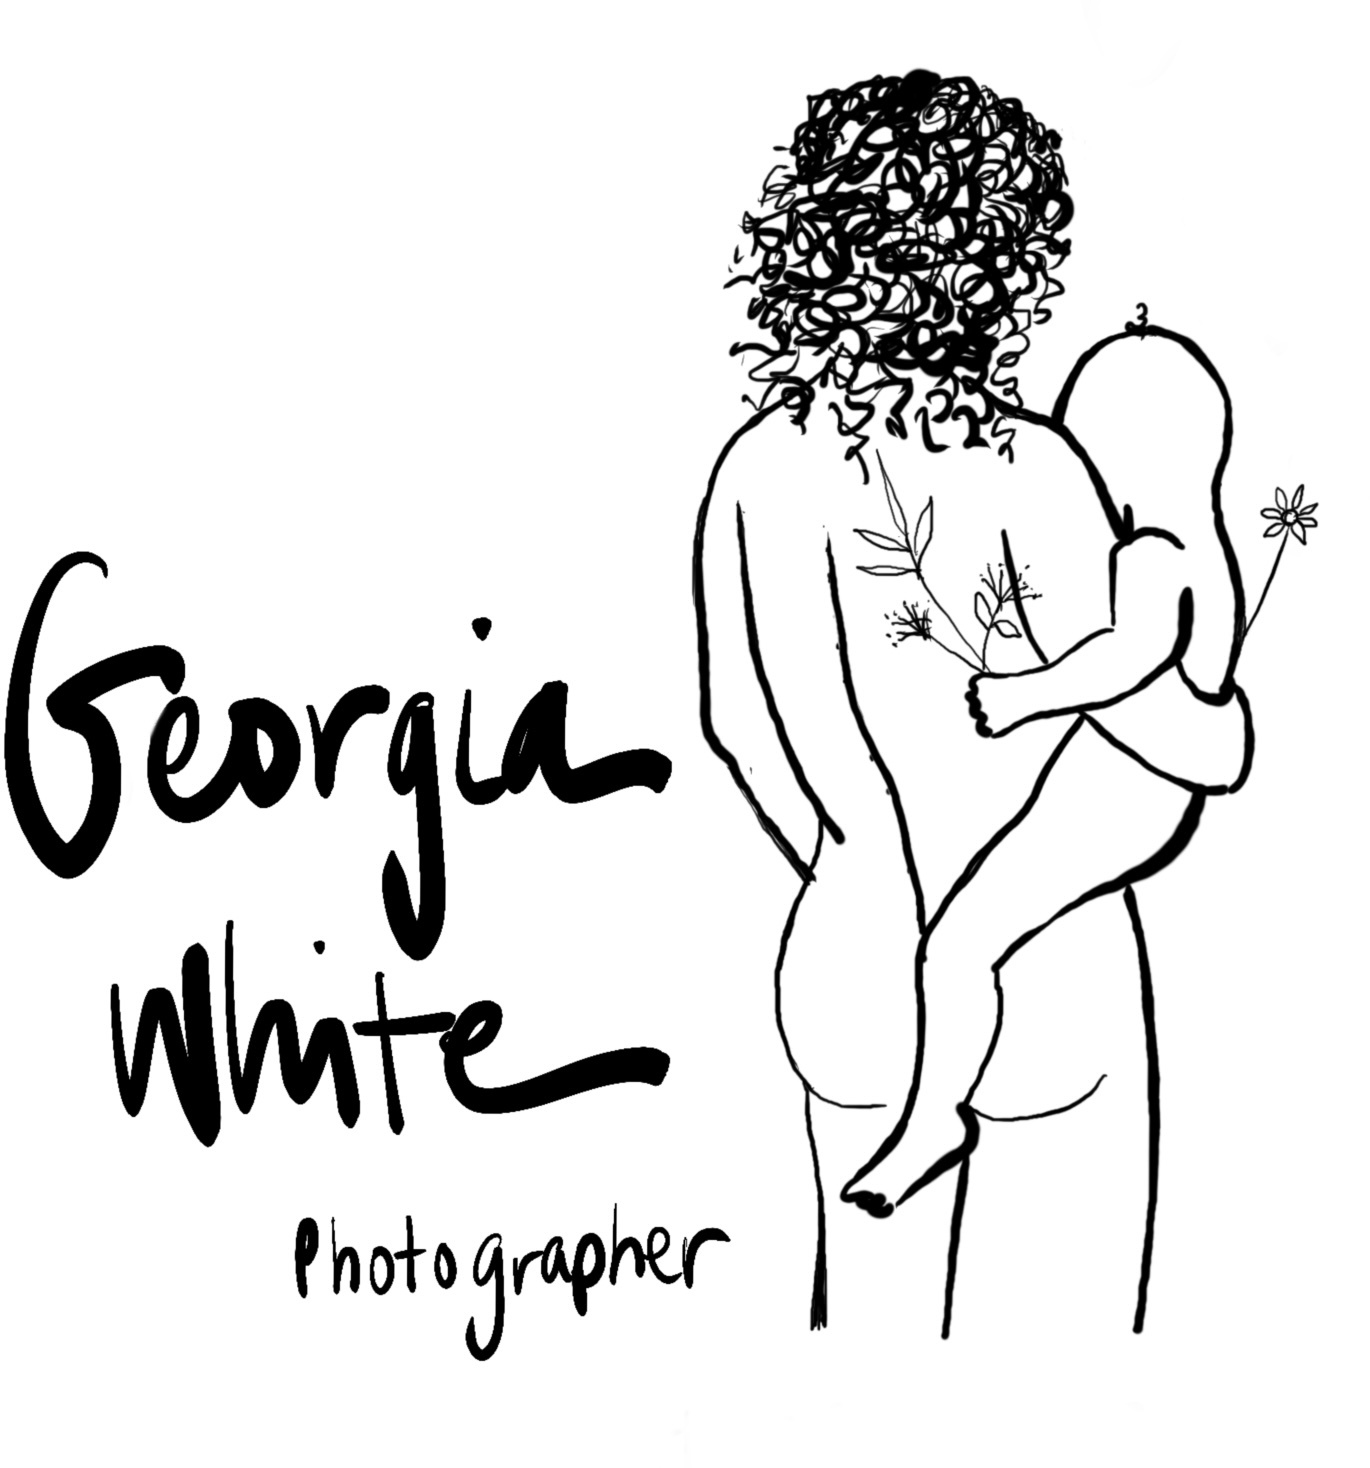 Georgia White Photographer